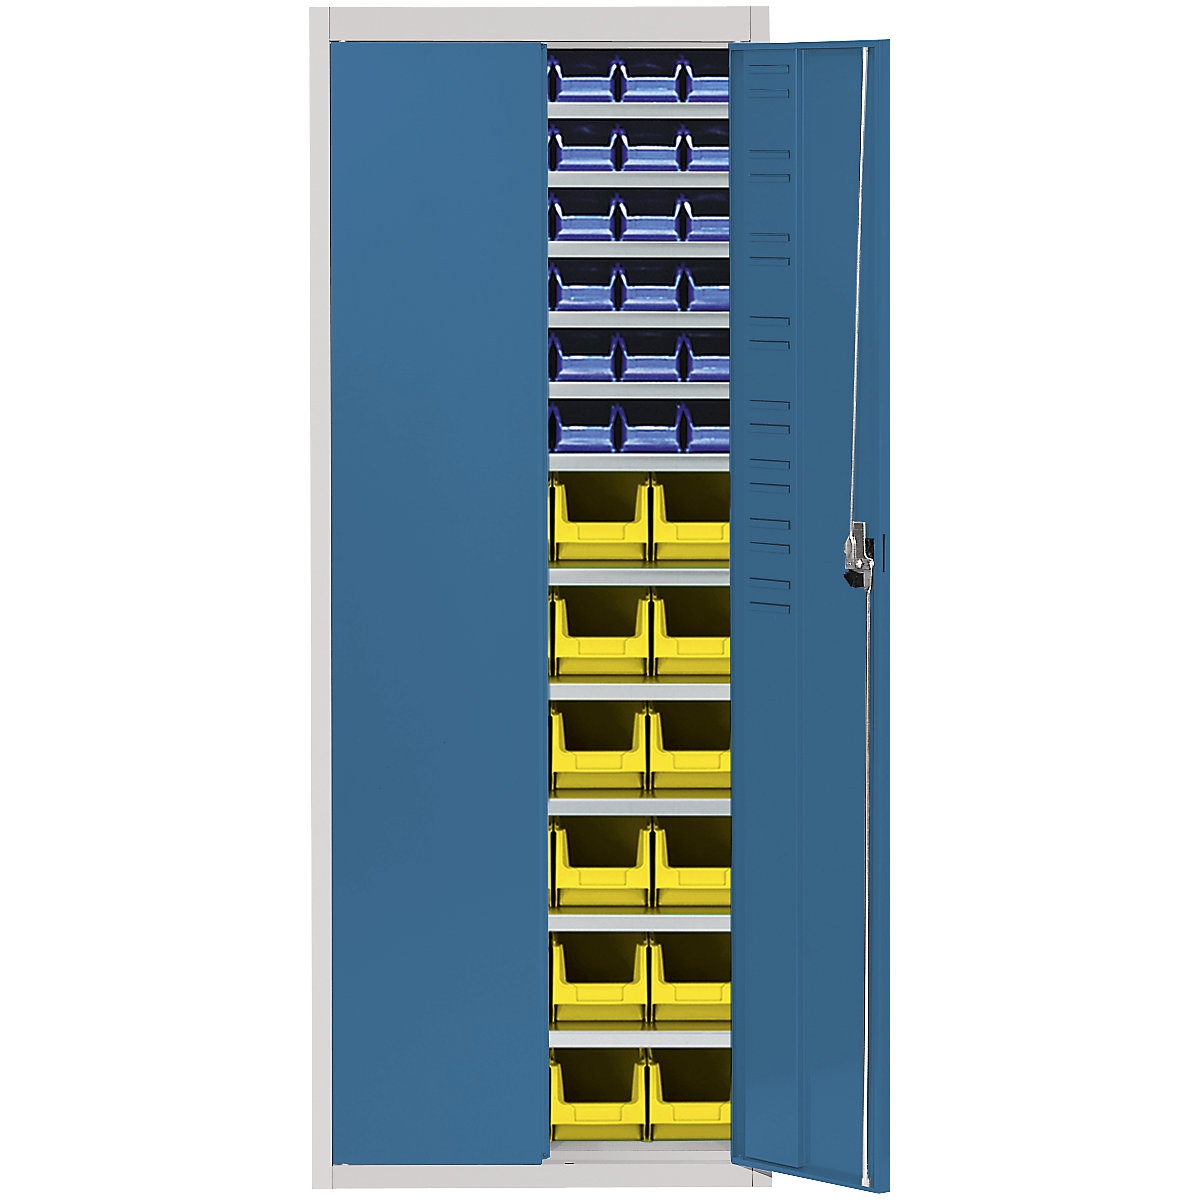 Skladišni ormar s otvorenim skladišnim kutijama – mauser, VxŠxD 1740 x 680 x 280 mm, u dvije boje, korpus u sivoj boji, vrata u plavoj boji, 60 kutija-8